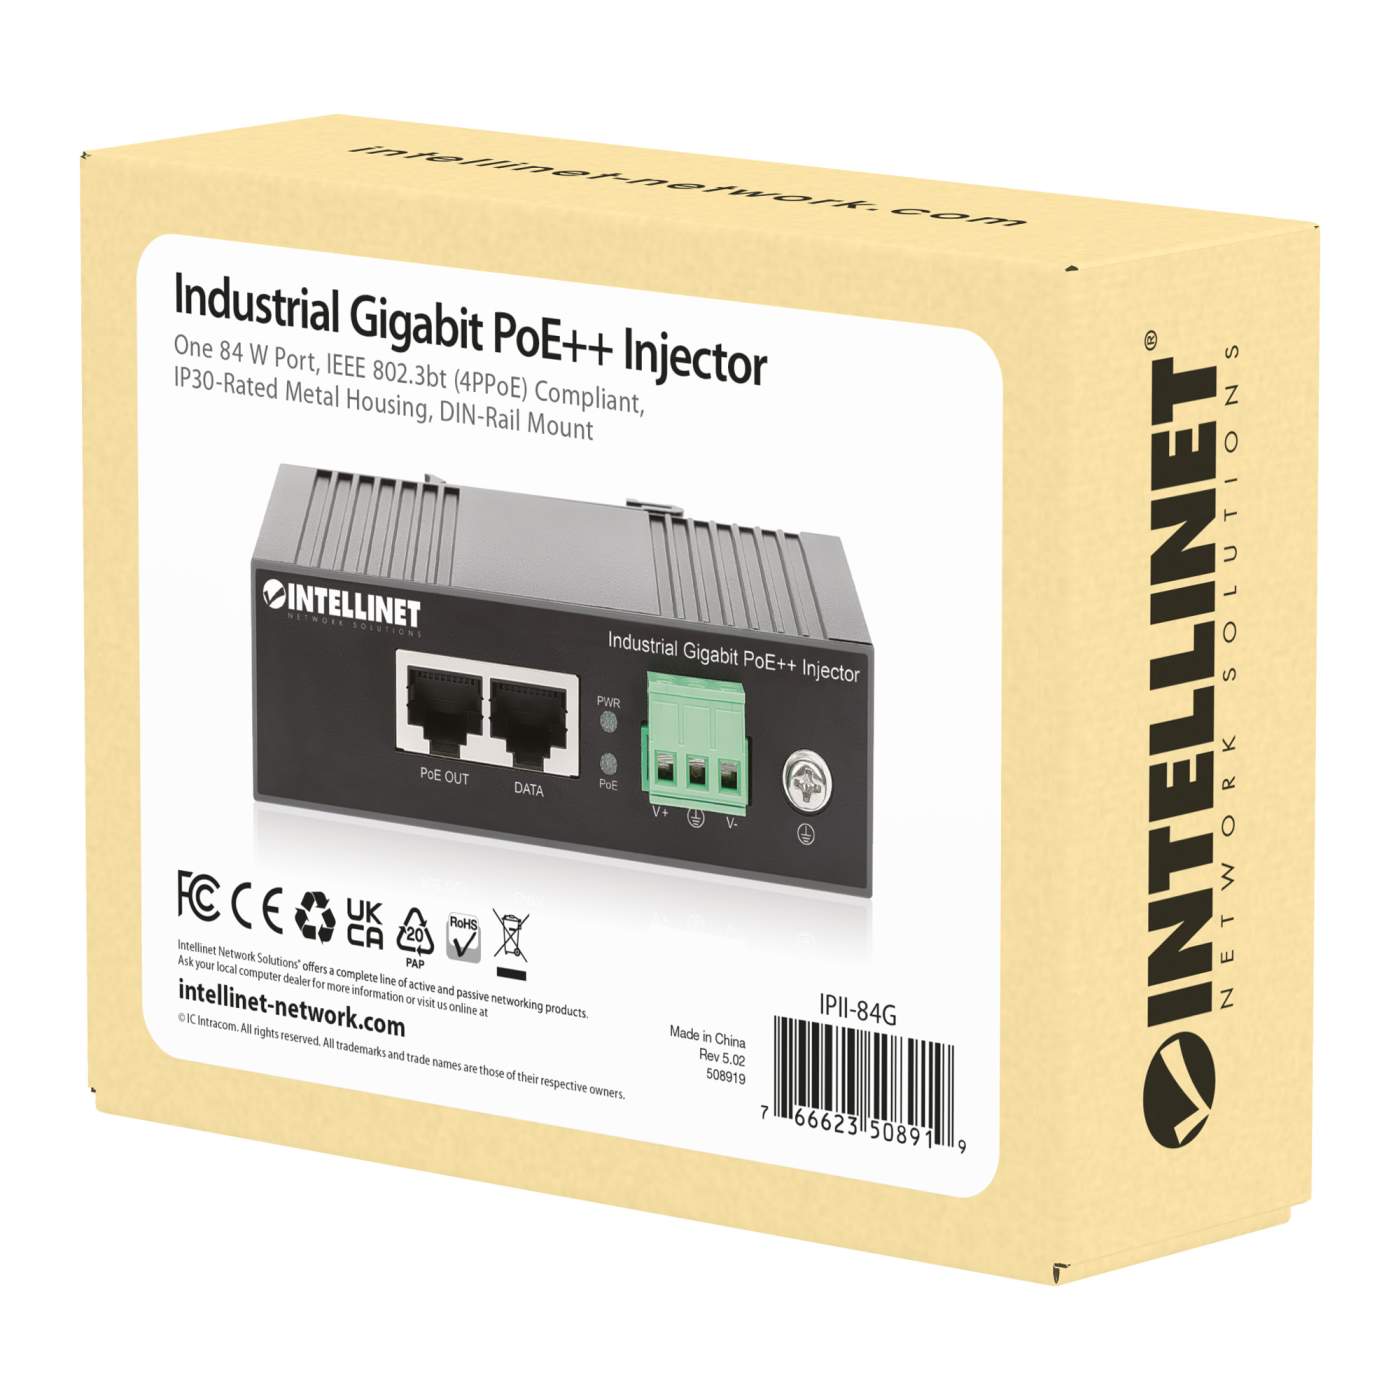 Industrial Gigabit PoE++ Injector Packaging Image 2